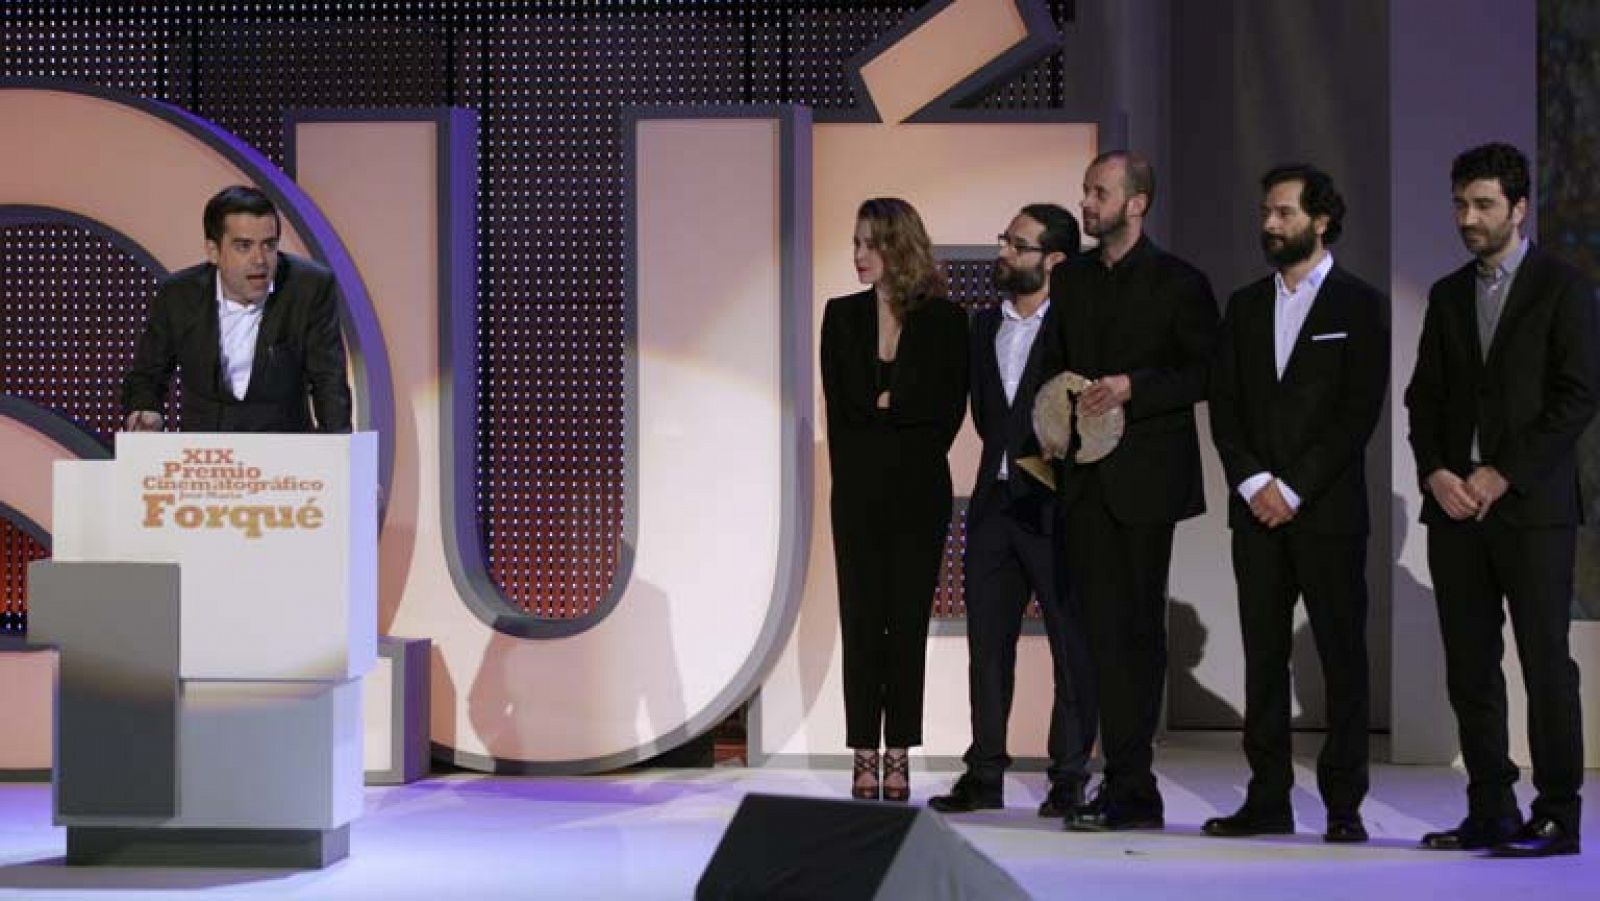 Telediario 1: "La herida" fue la gran triunfadora en los premios Forqué | RTVE Play